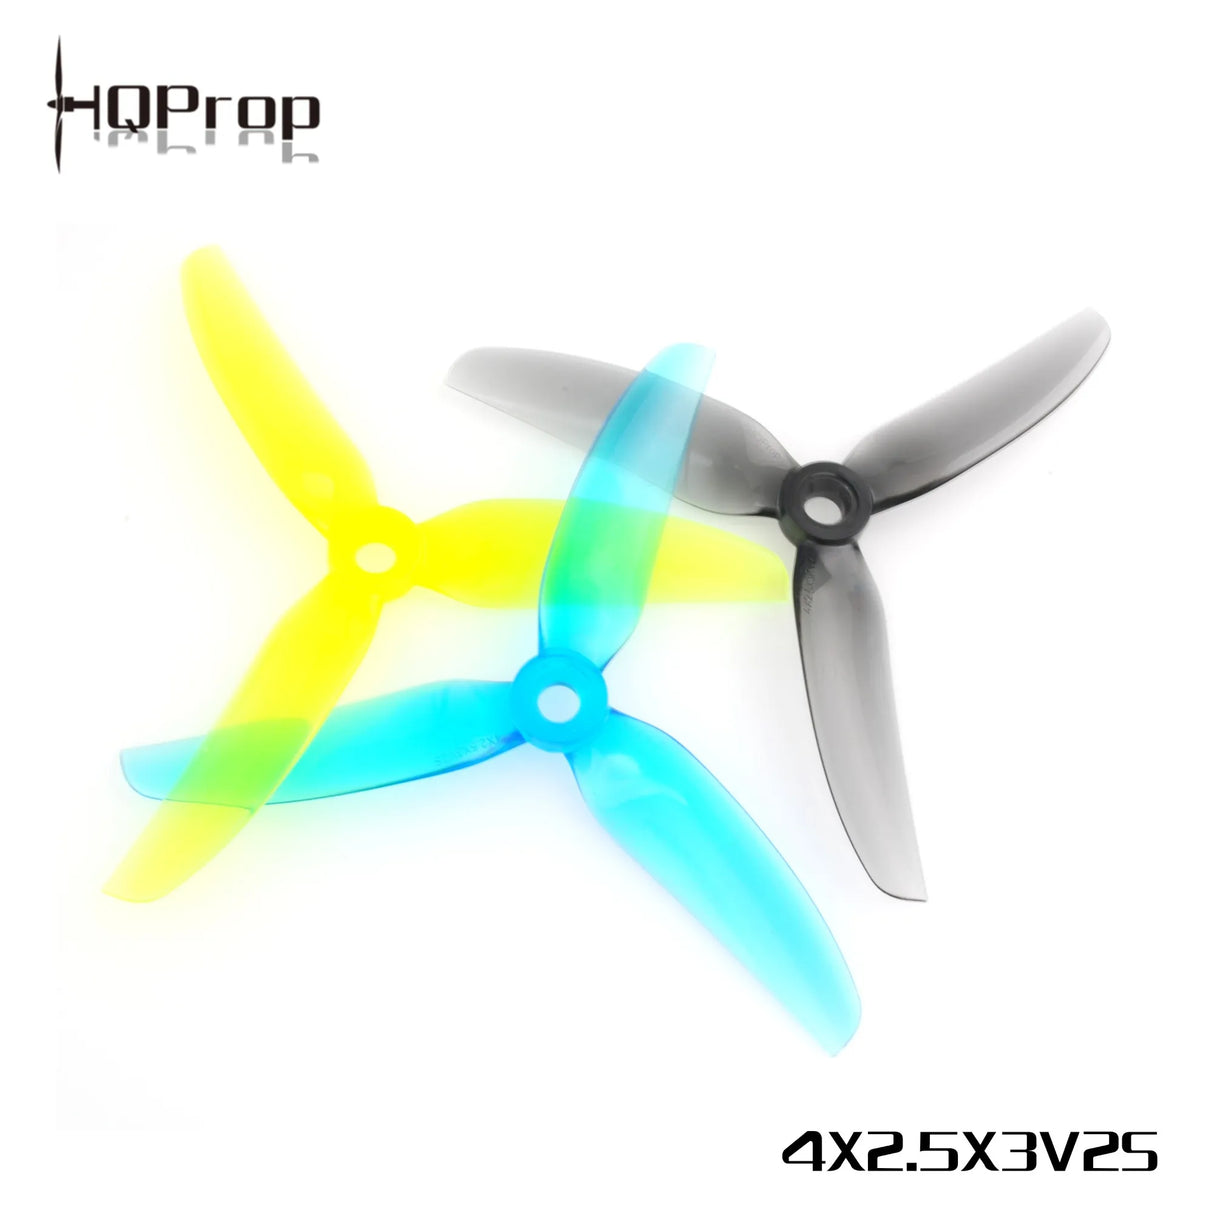 HQProp 4X2.5X3V2S - DroneDynamics.ca